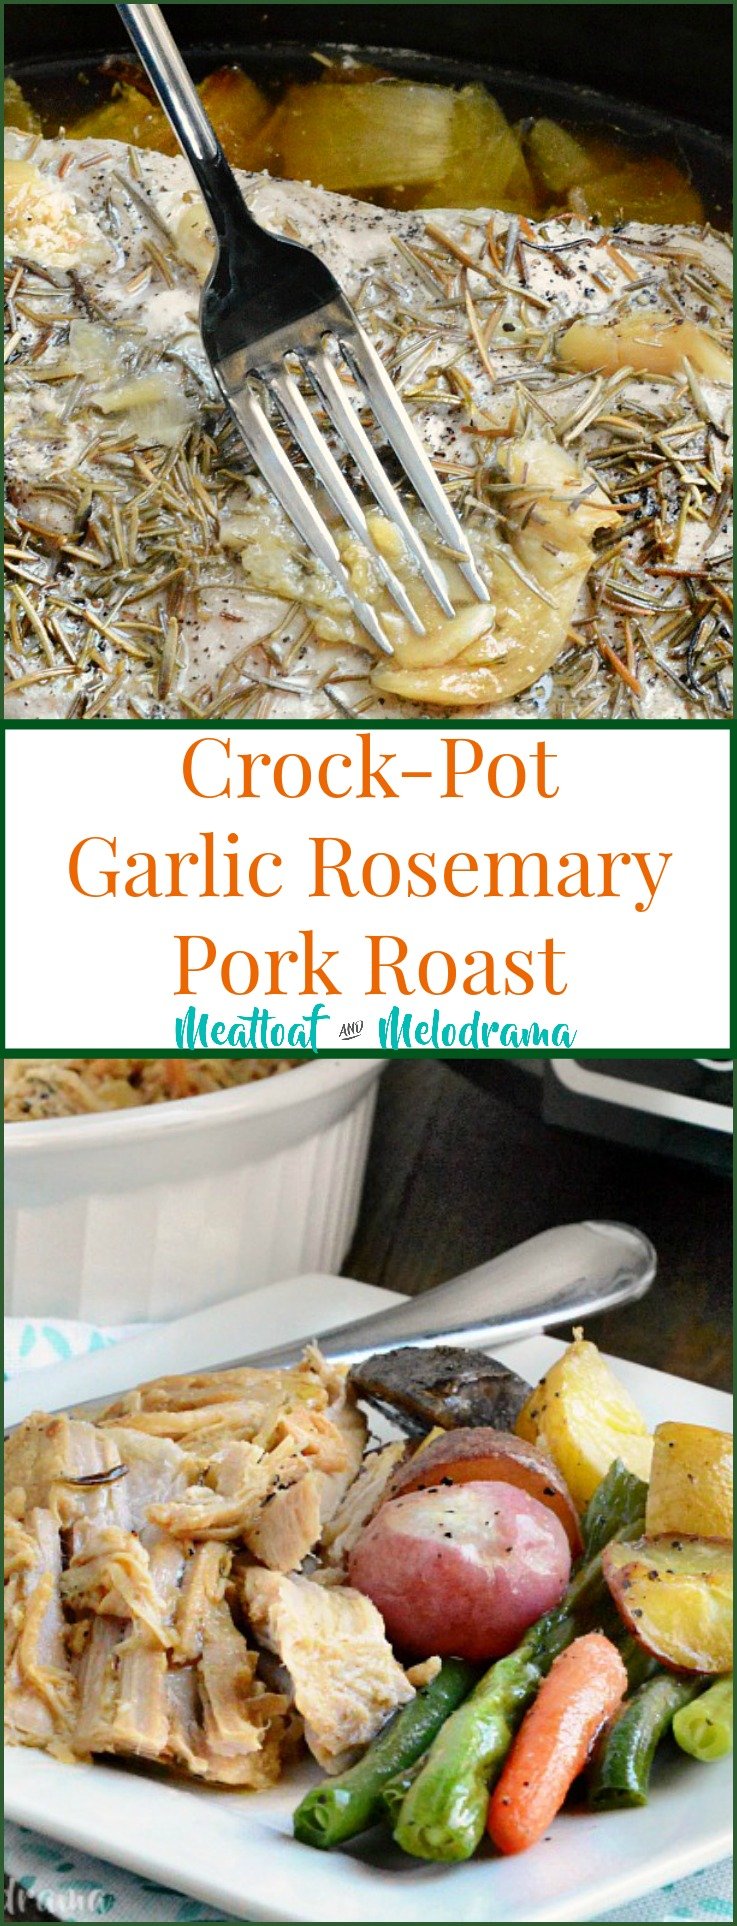 Crock-Pot Garlic Rosemary Pork Roast - Meatloaf and Melodrama